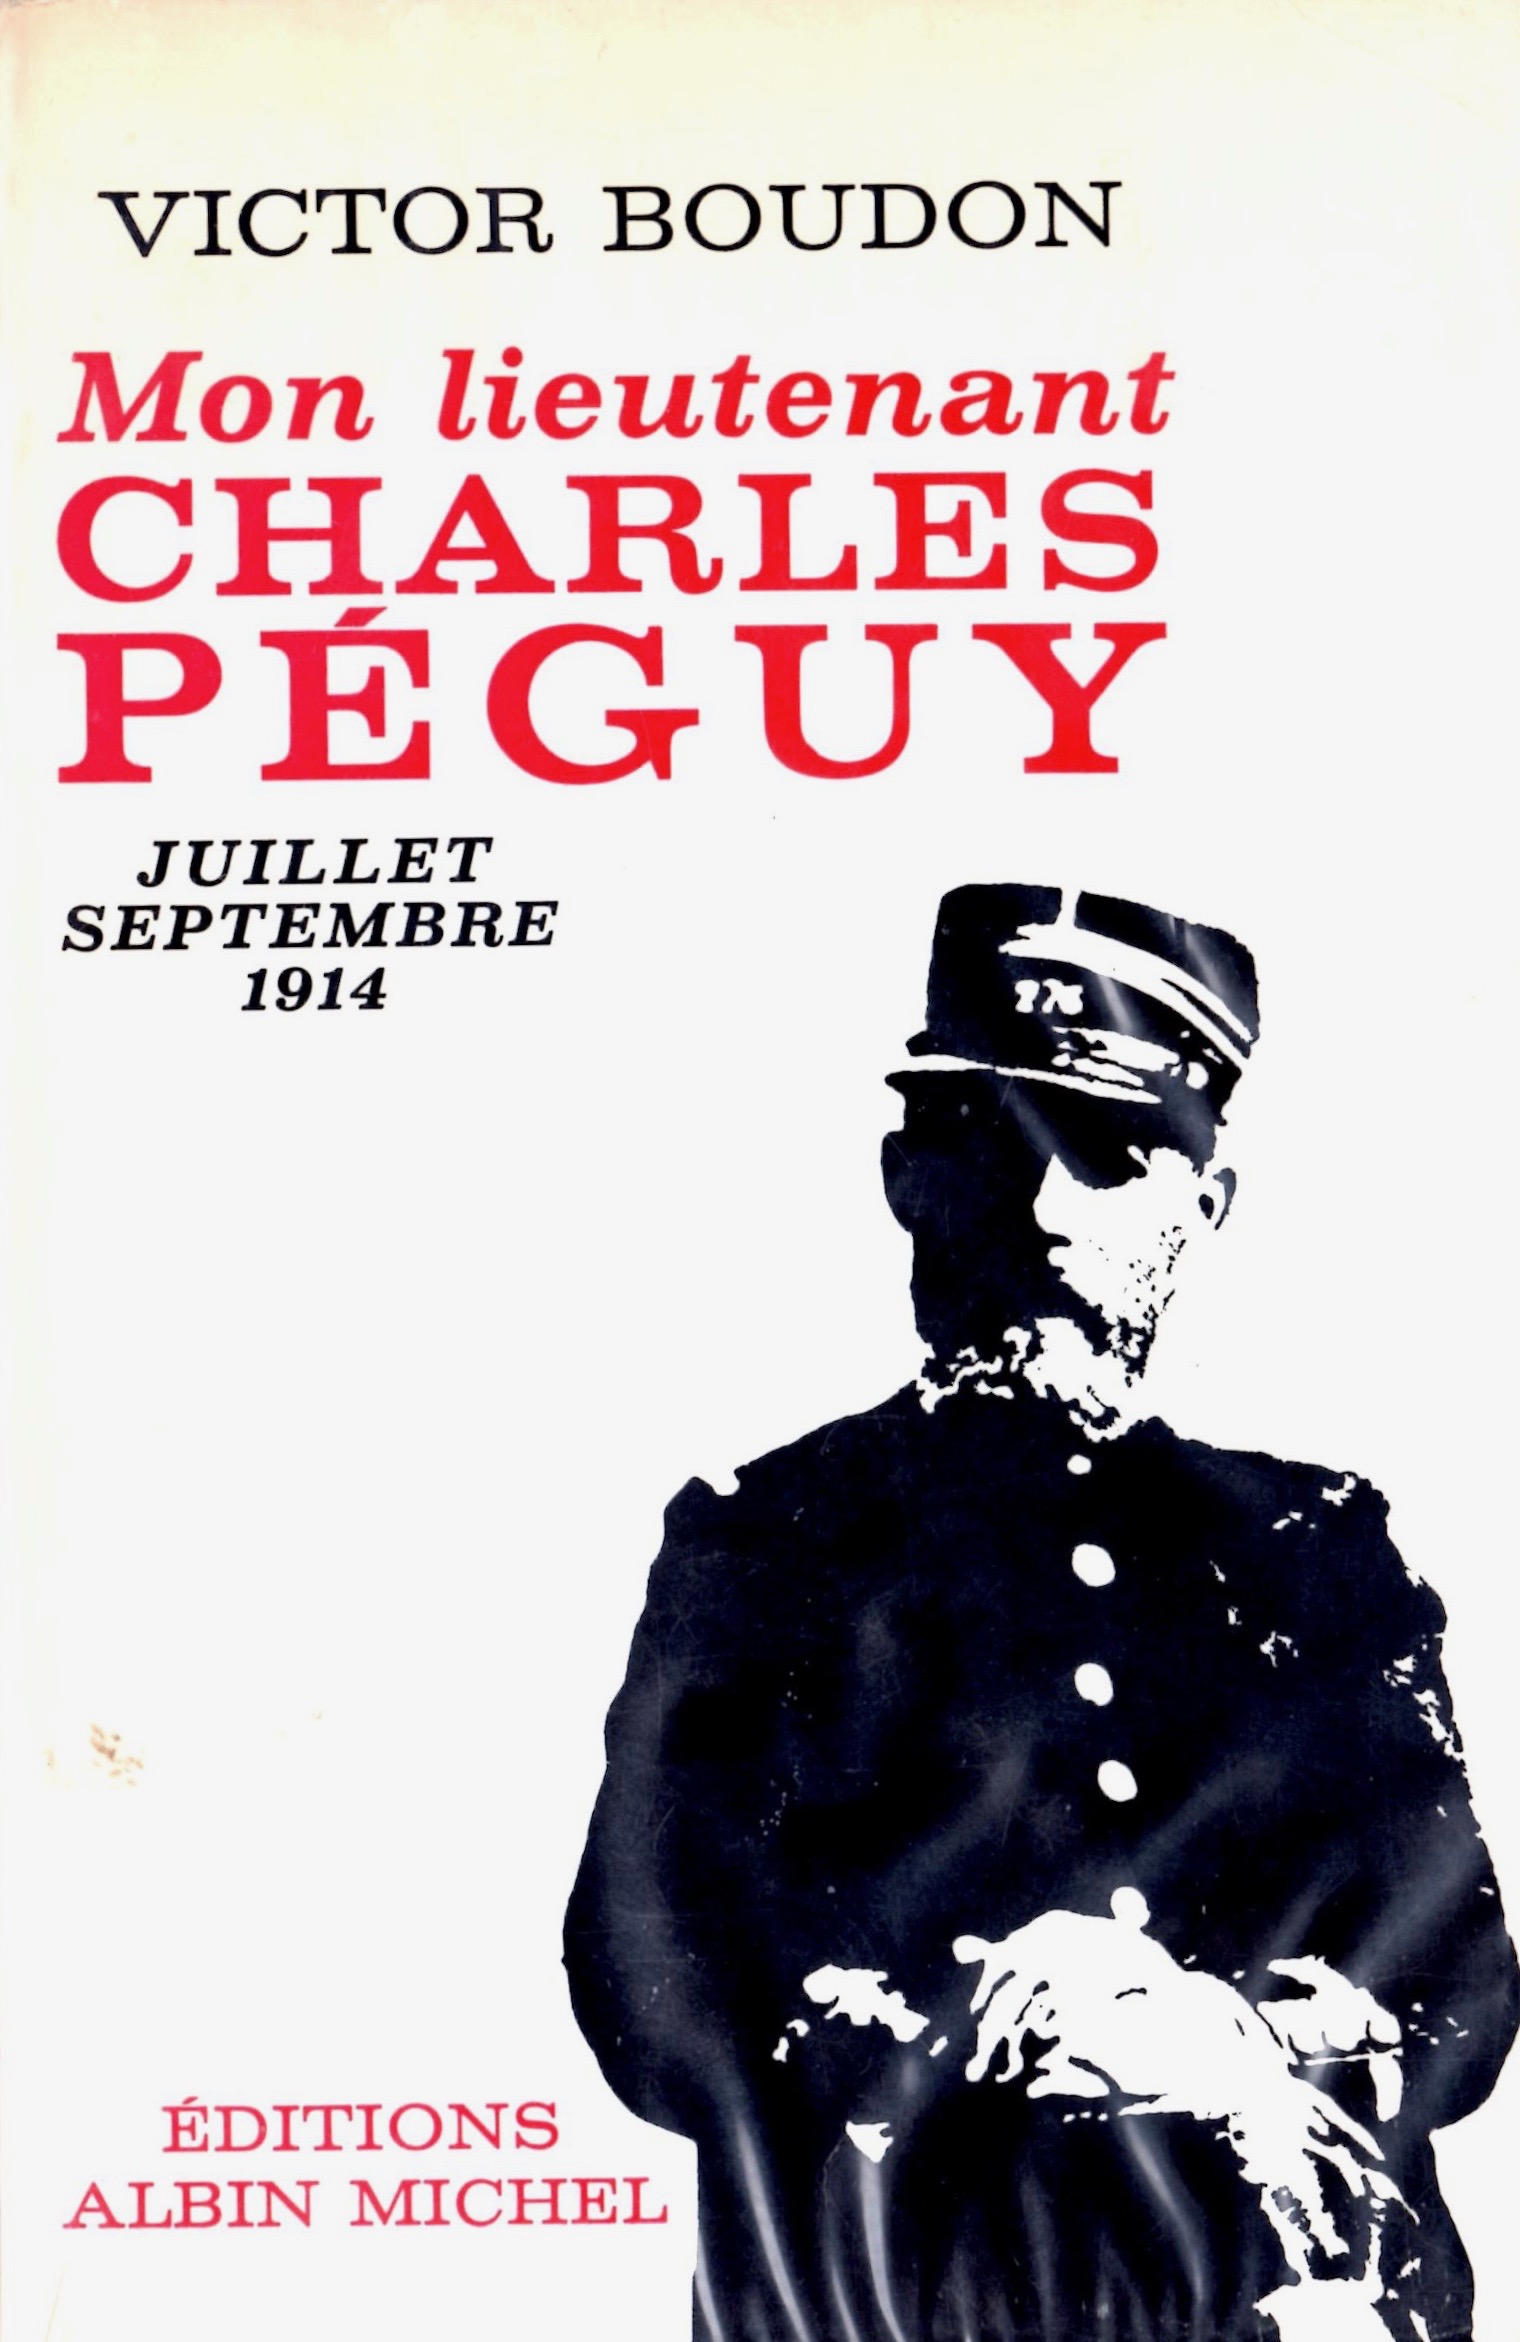 Livre Victor Boudon "Mon lieutenant Charles Péguy"